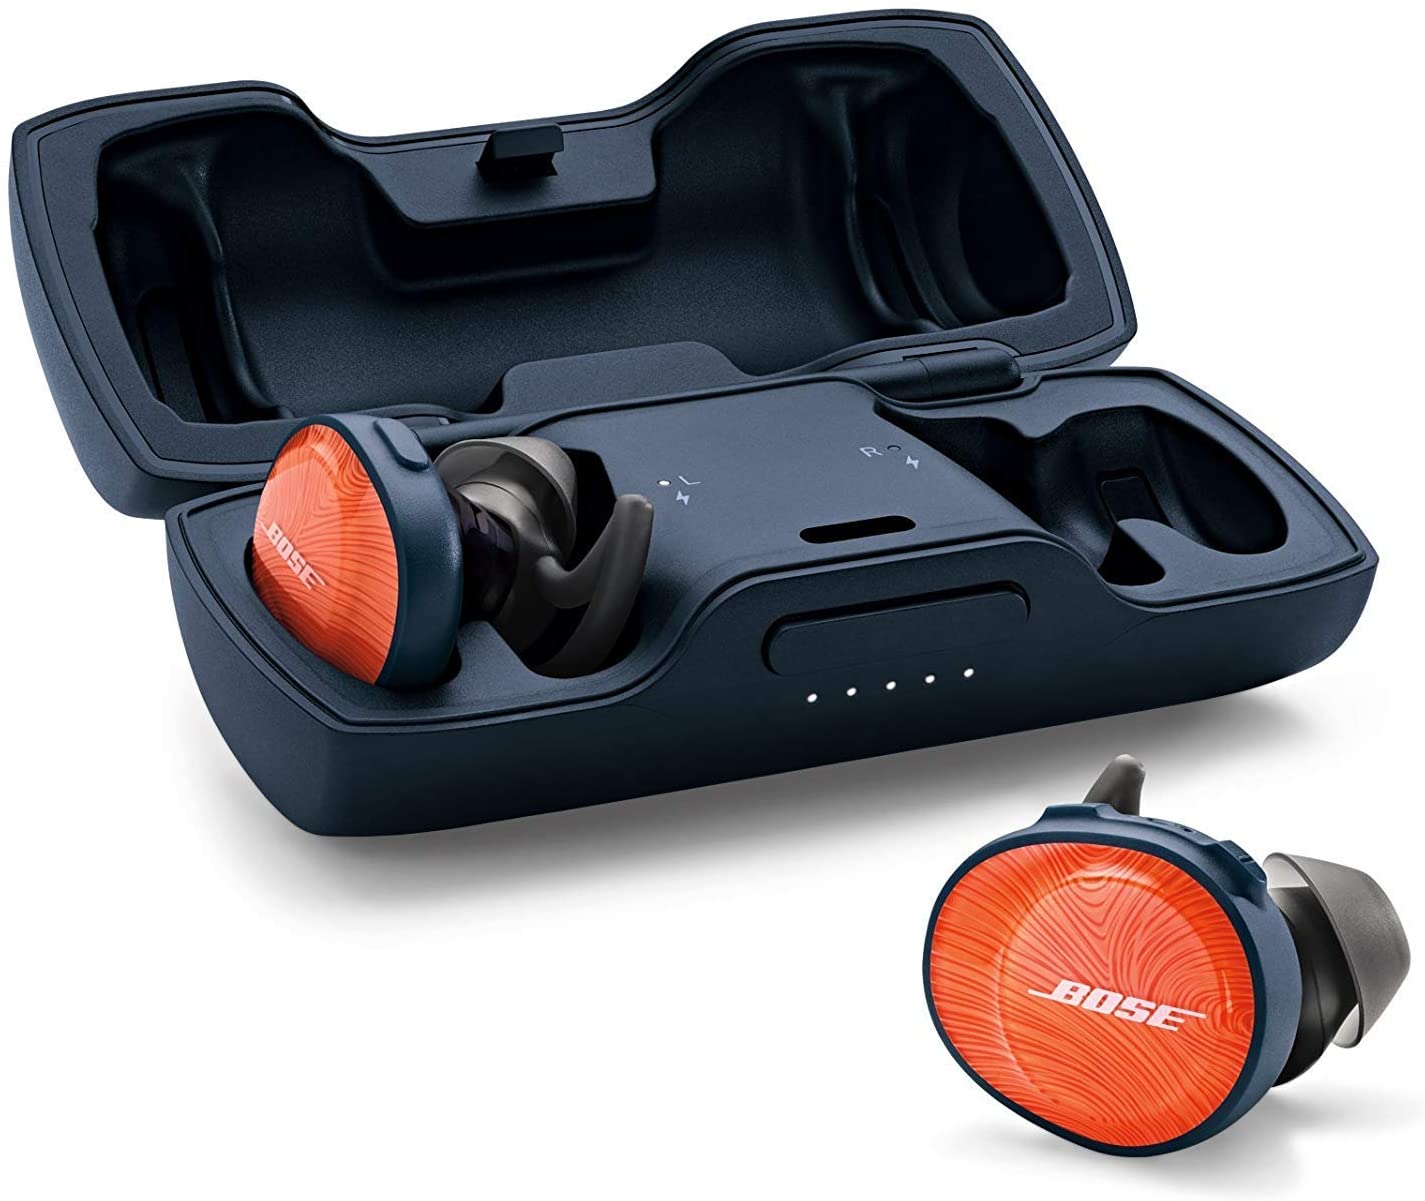 Bose SoundSport Free wireless in-earbuds